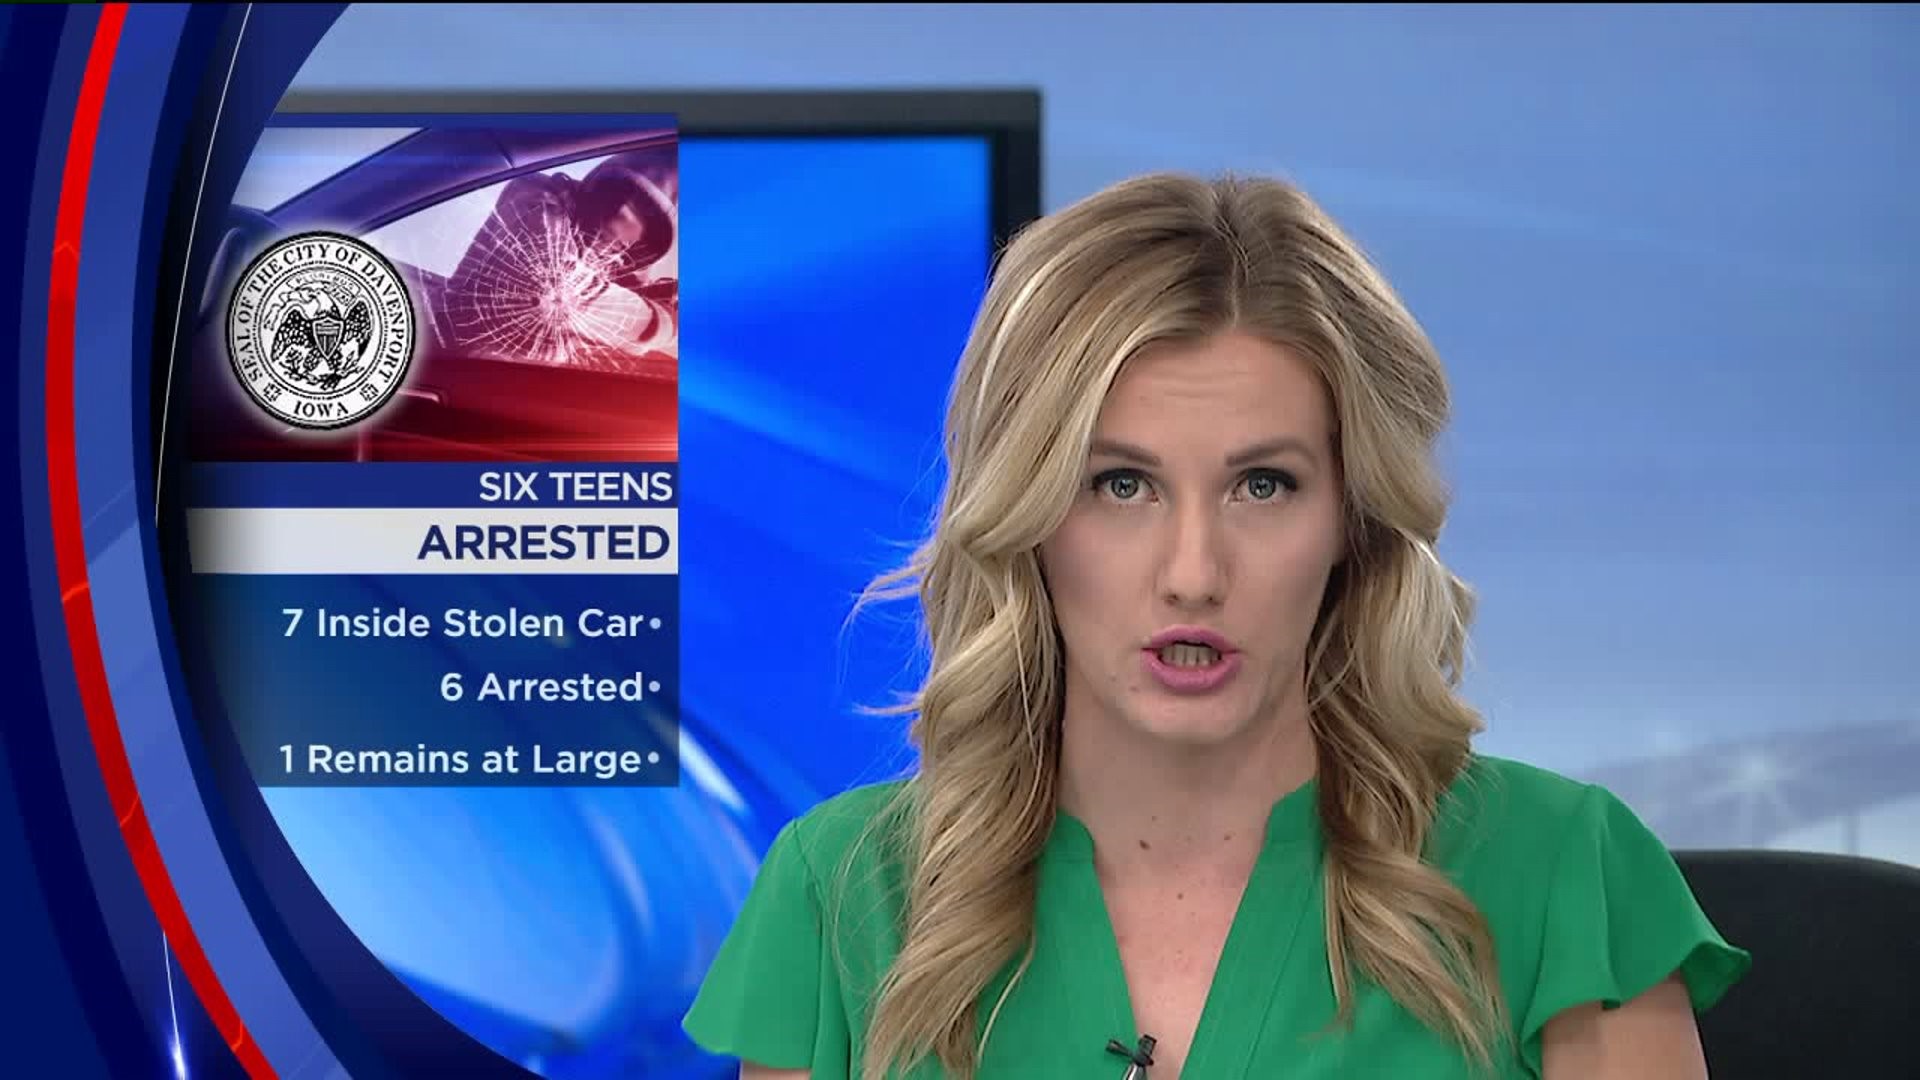 6 Teens Arrested in Davenport